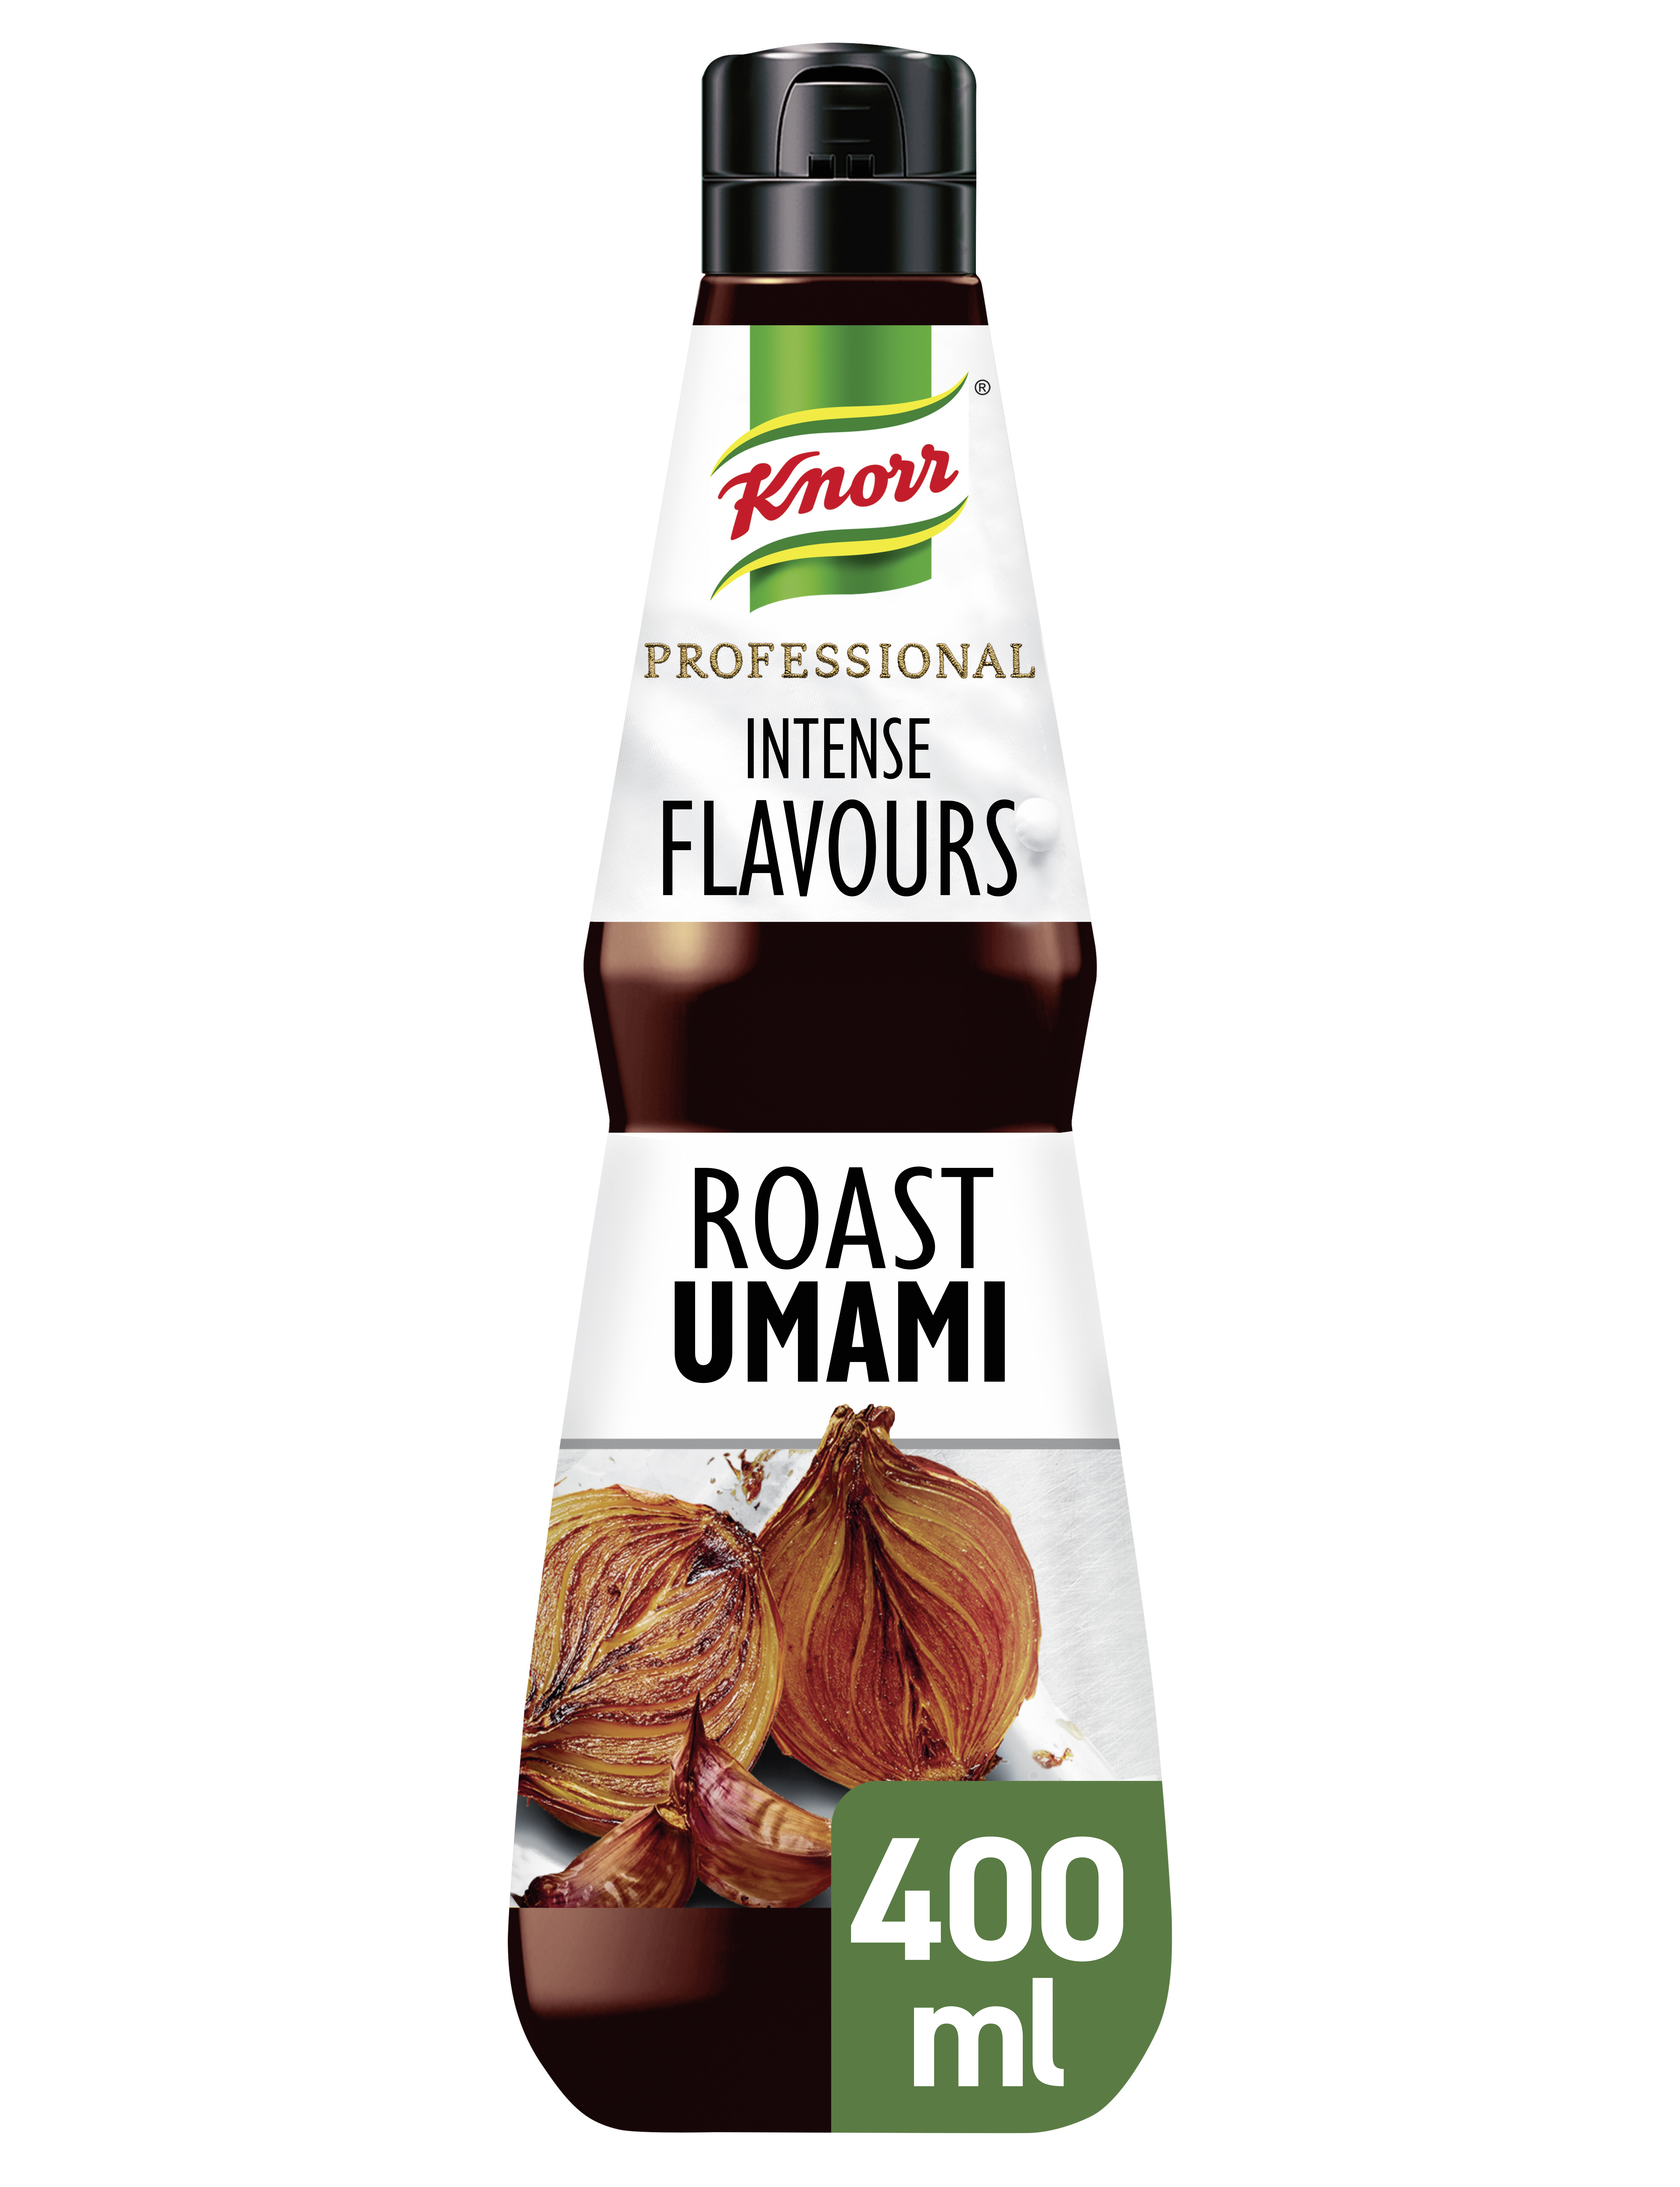 Knorr Professional Intense Flavours Roast Umami Vloeibaar 400ml - *let op: de levertijd voor dit product kan afwijken en langer duren dan je gewend bent. Excuses voor het ongemak.